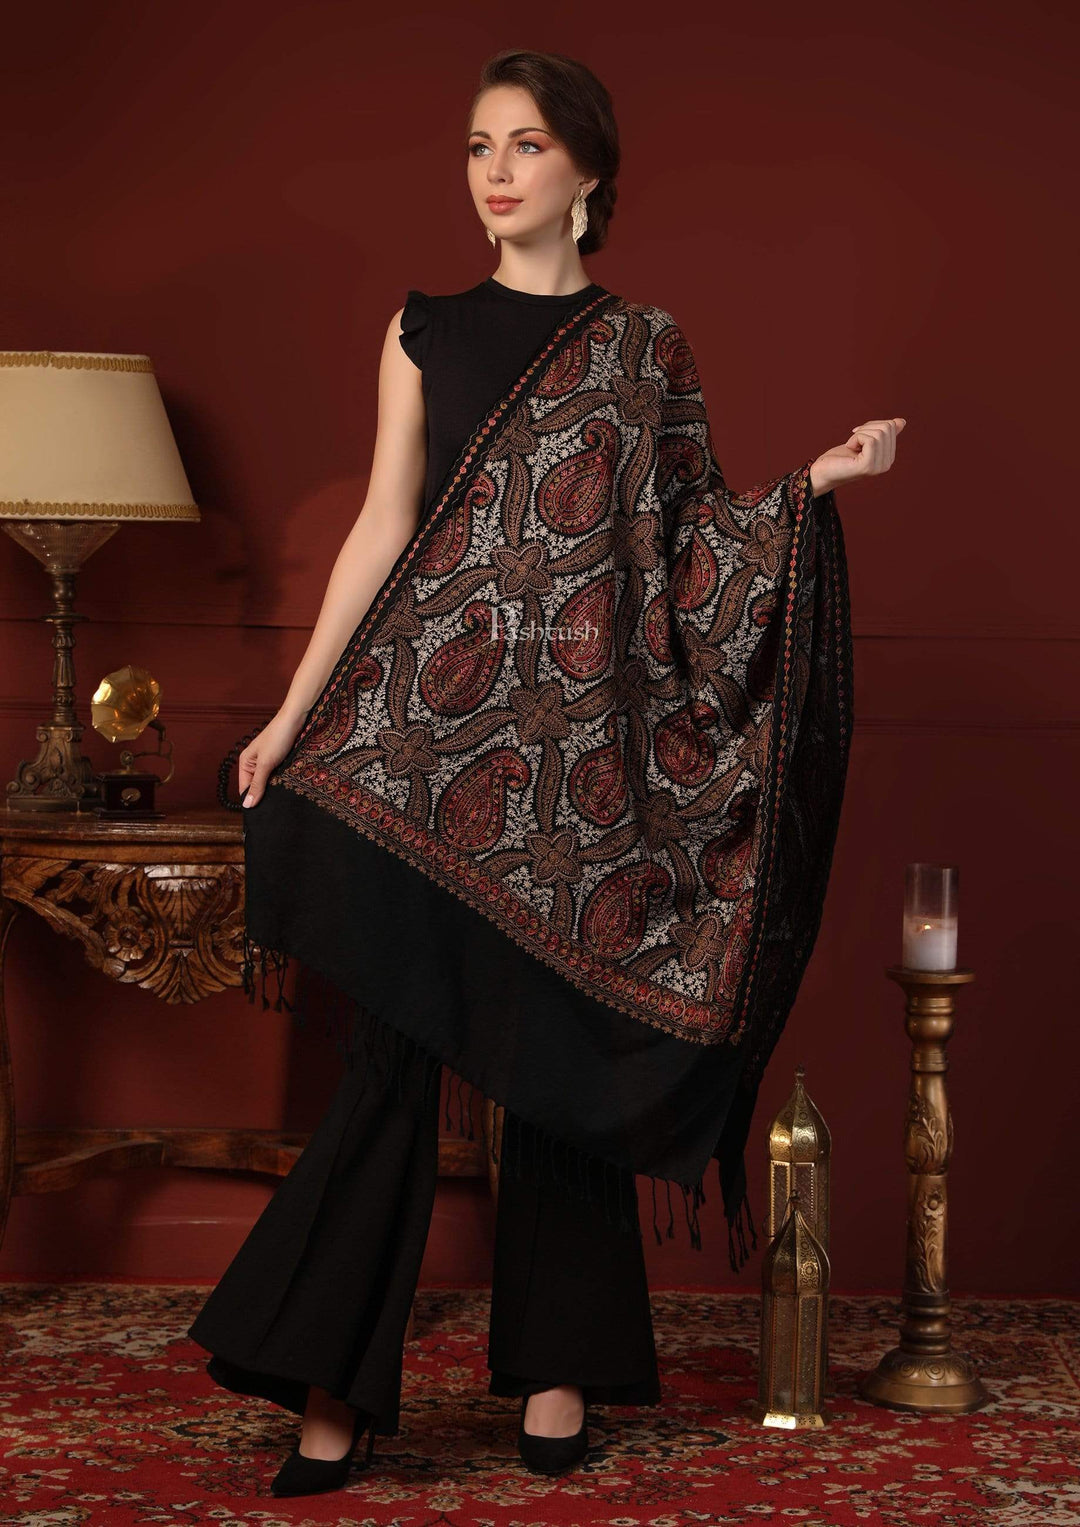 Pashtush India 70x200 Pashtush Womens Woollen Stole with Nalki Embroidery, Black